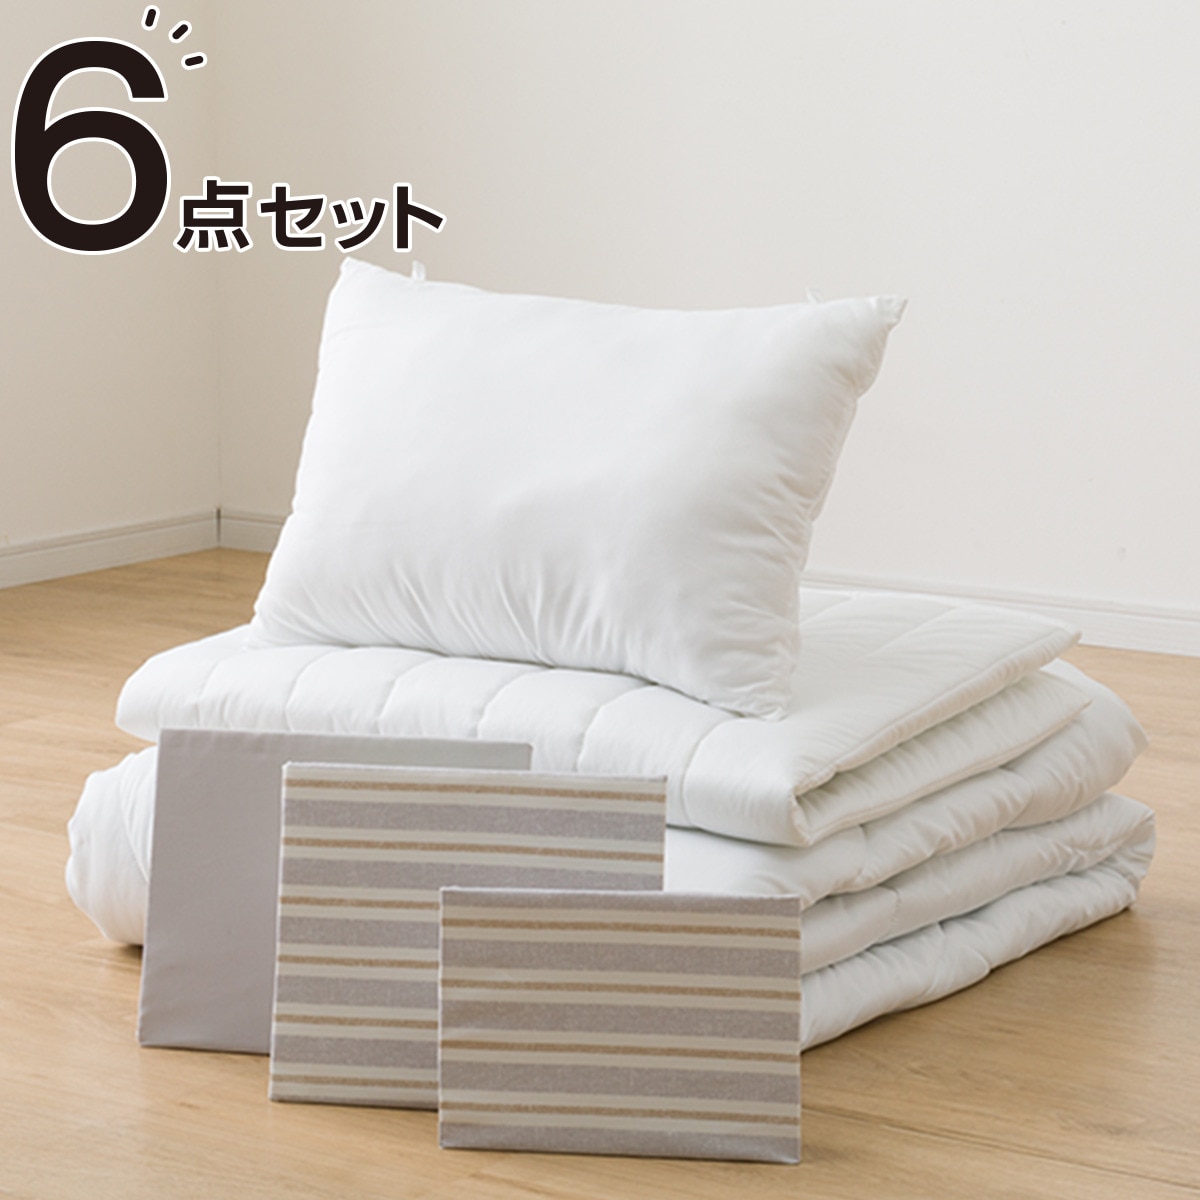 すぐに使えるベッド用寝具6点セット シングル( BD/GY S2402 S)通販 ...